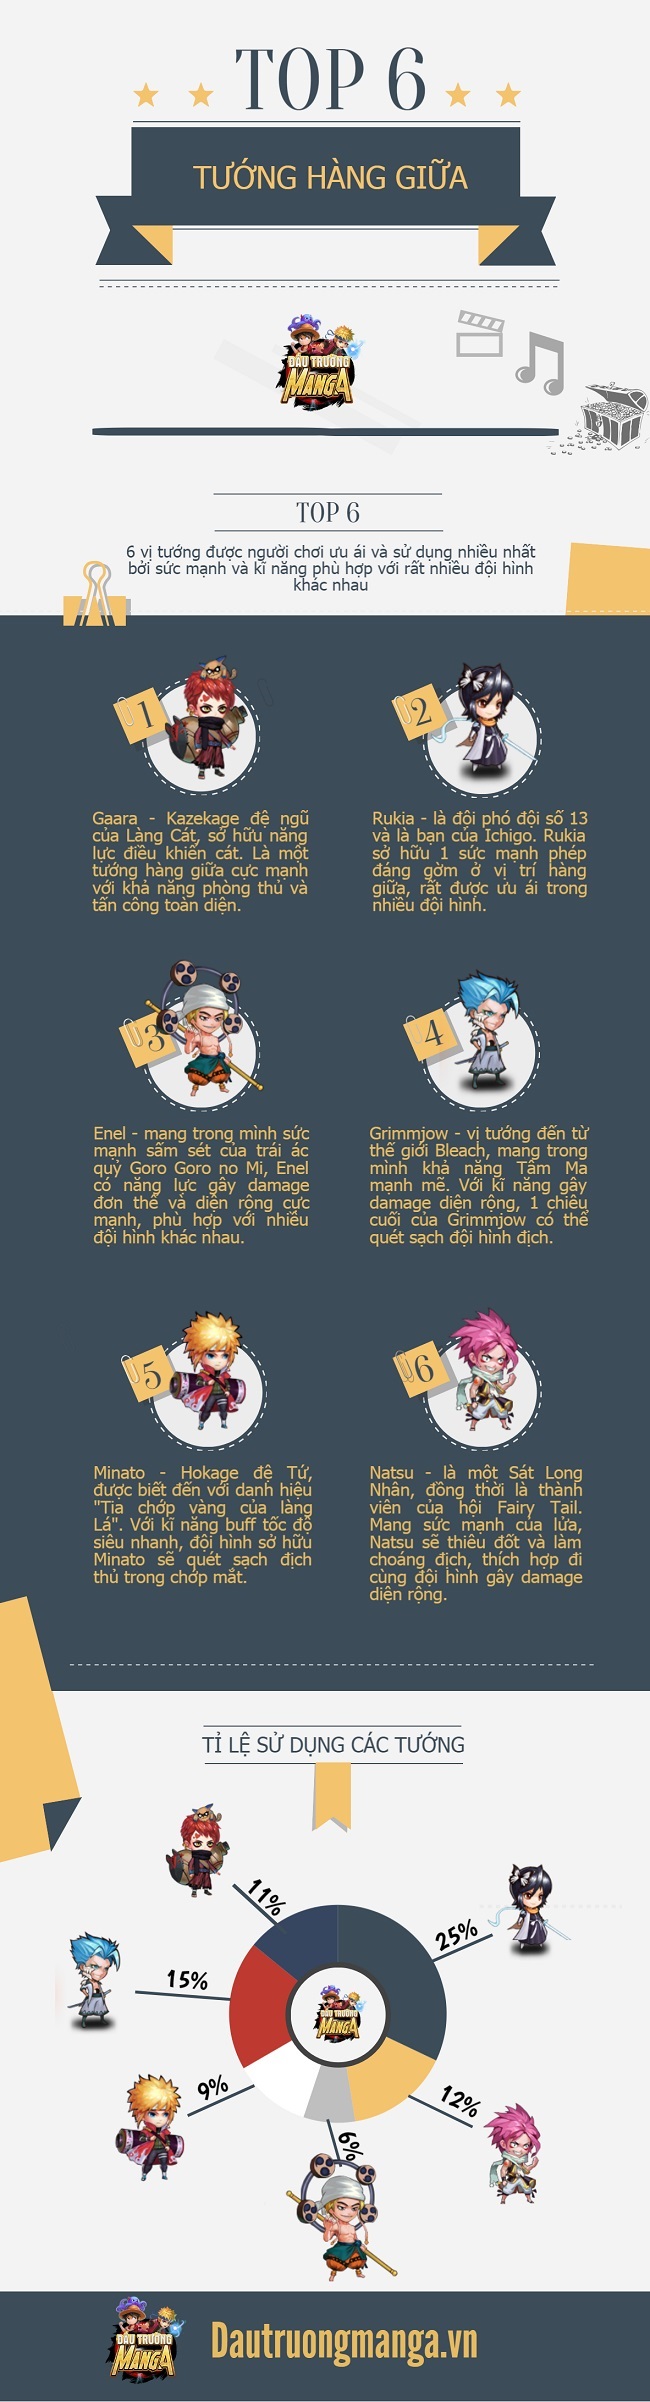 [Infographic] Top 6 tướng hàng giữa cực bá đạo trong Đấu Trường Manga